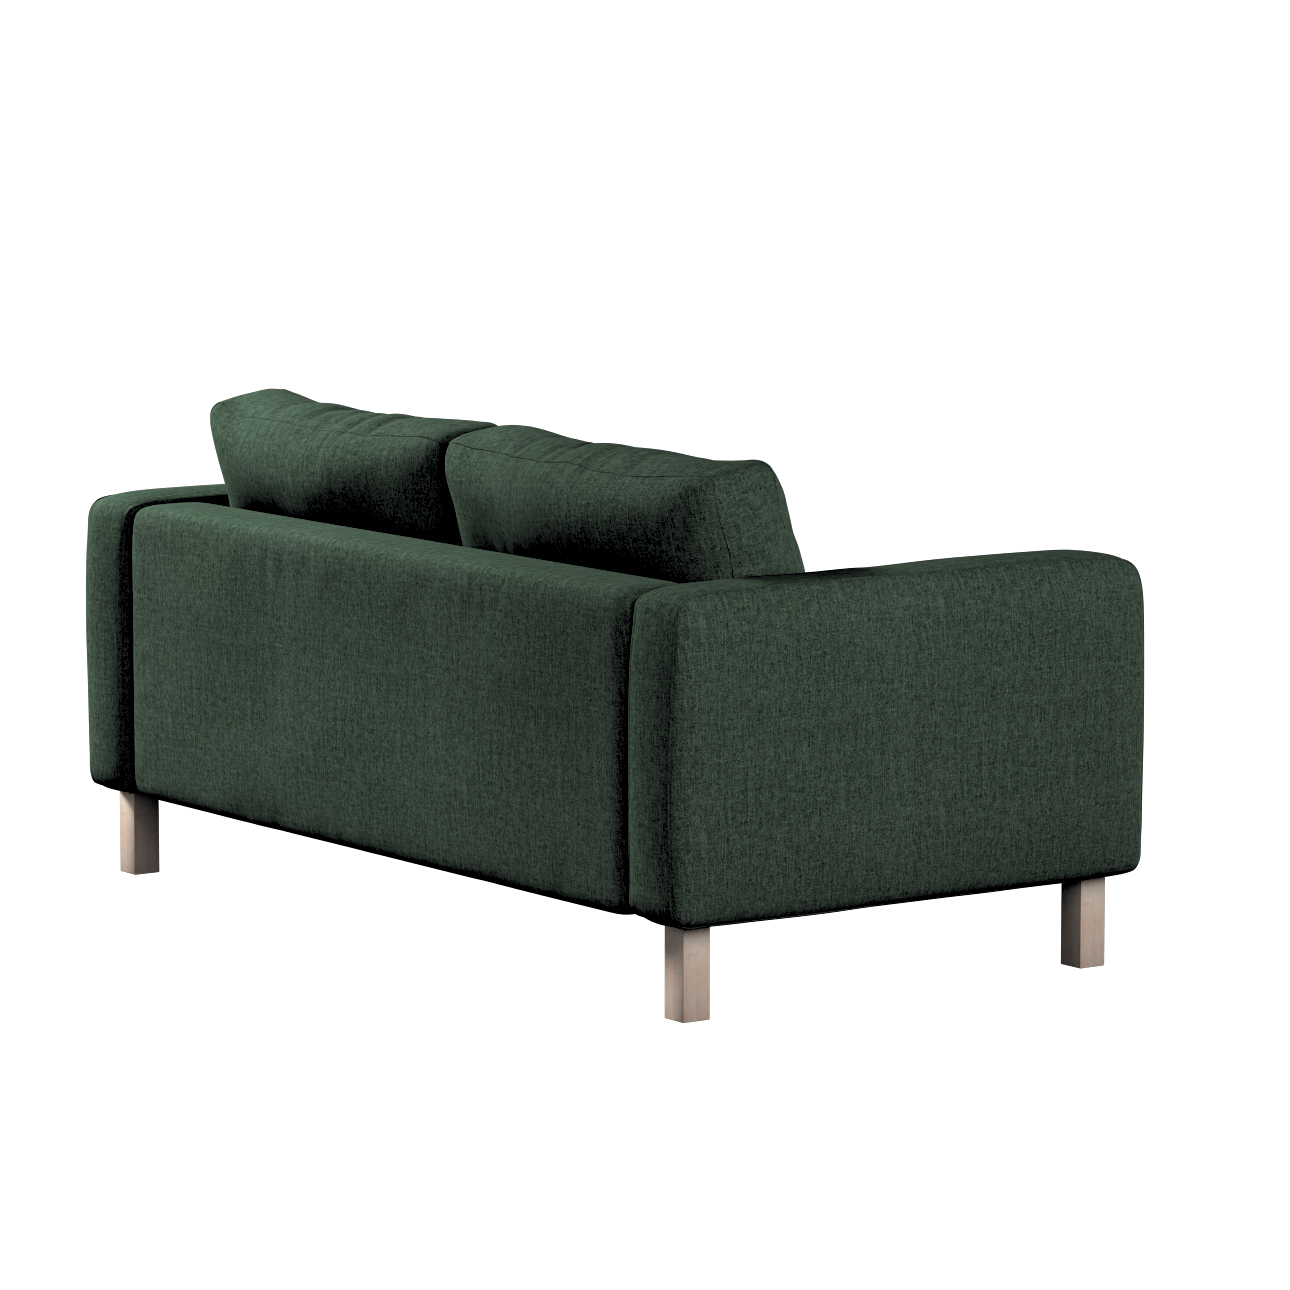 Bezug für Karlstad 2-Sitzer Sofa nicht ausklappbar, dunkelgrün, Sofahusse, günstig online kaufen